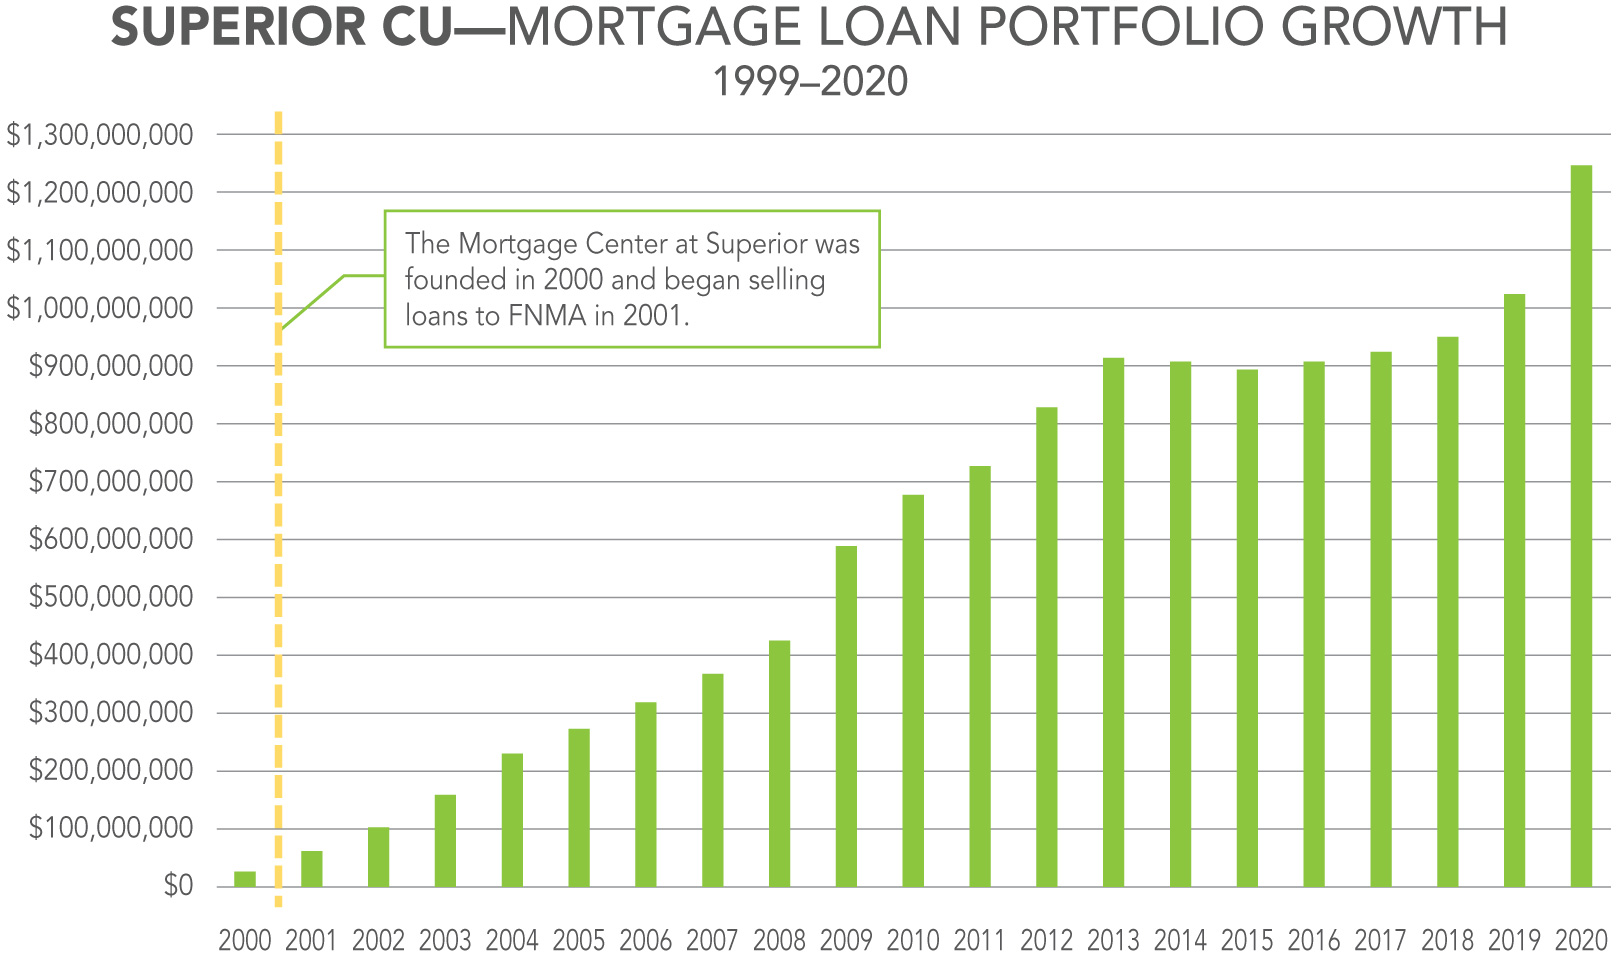 scu_mortgage_loan_portfolio_growth_rgb